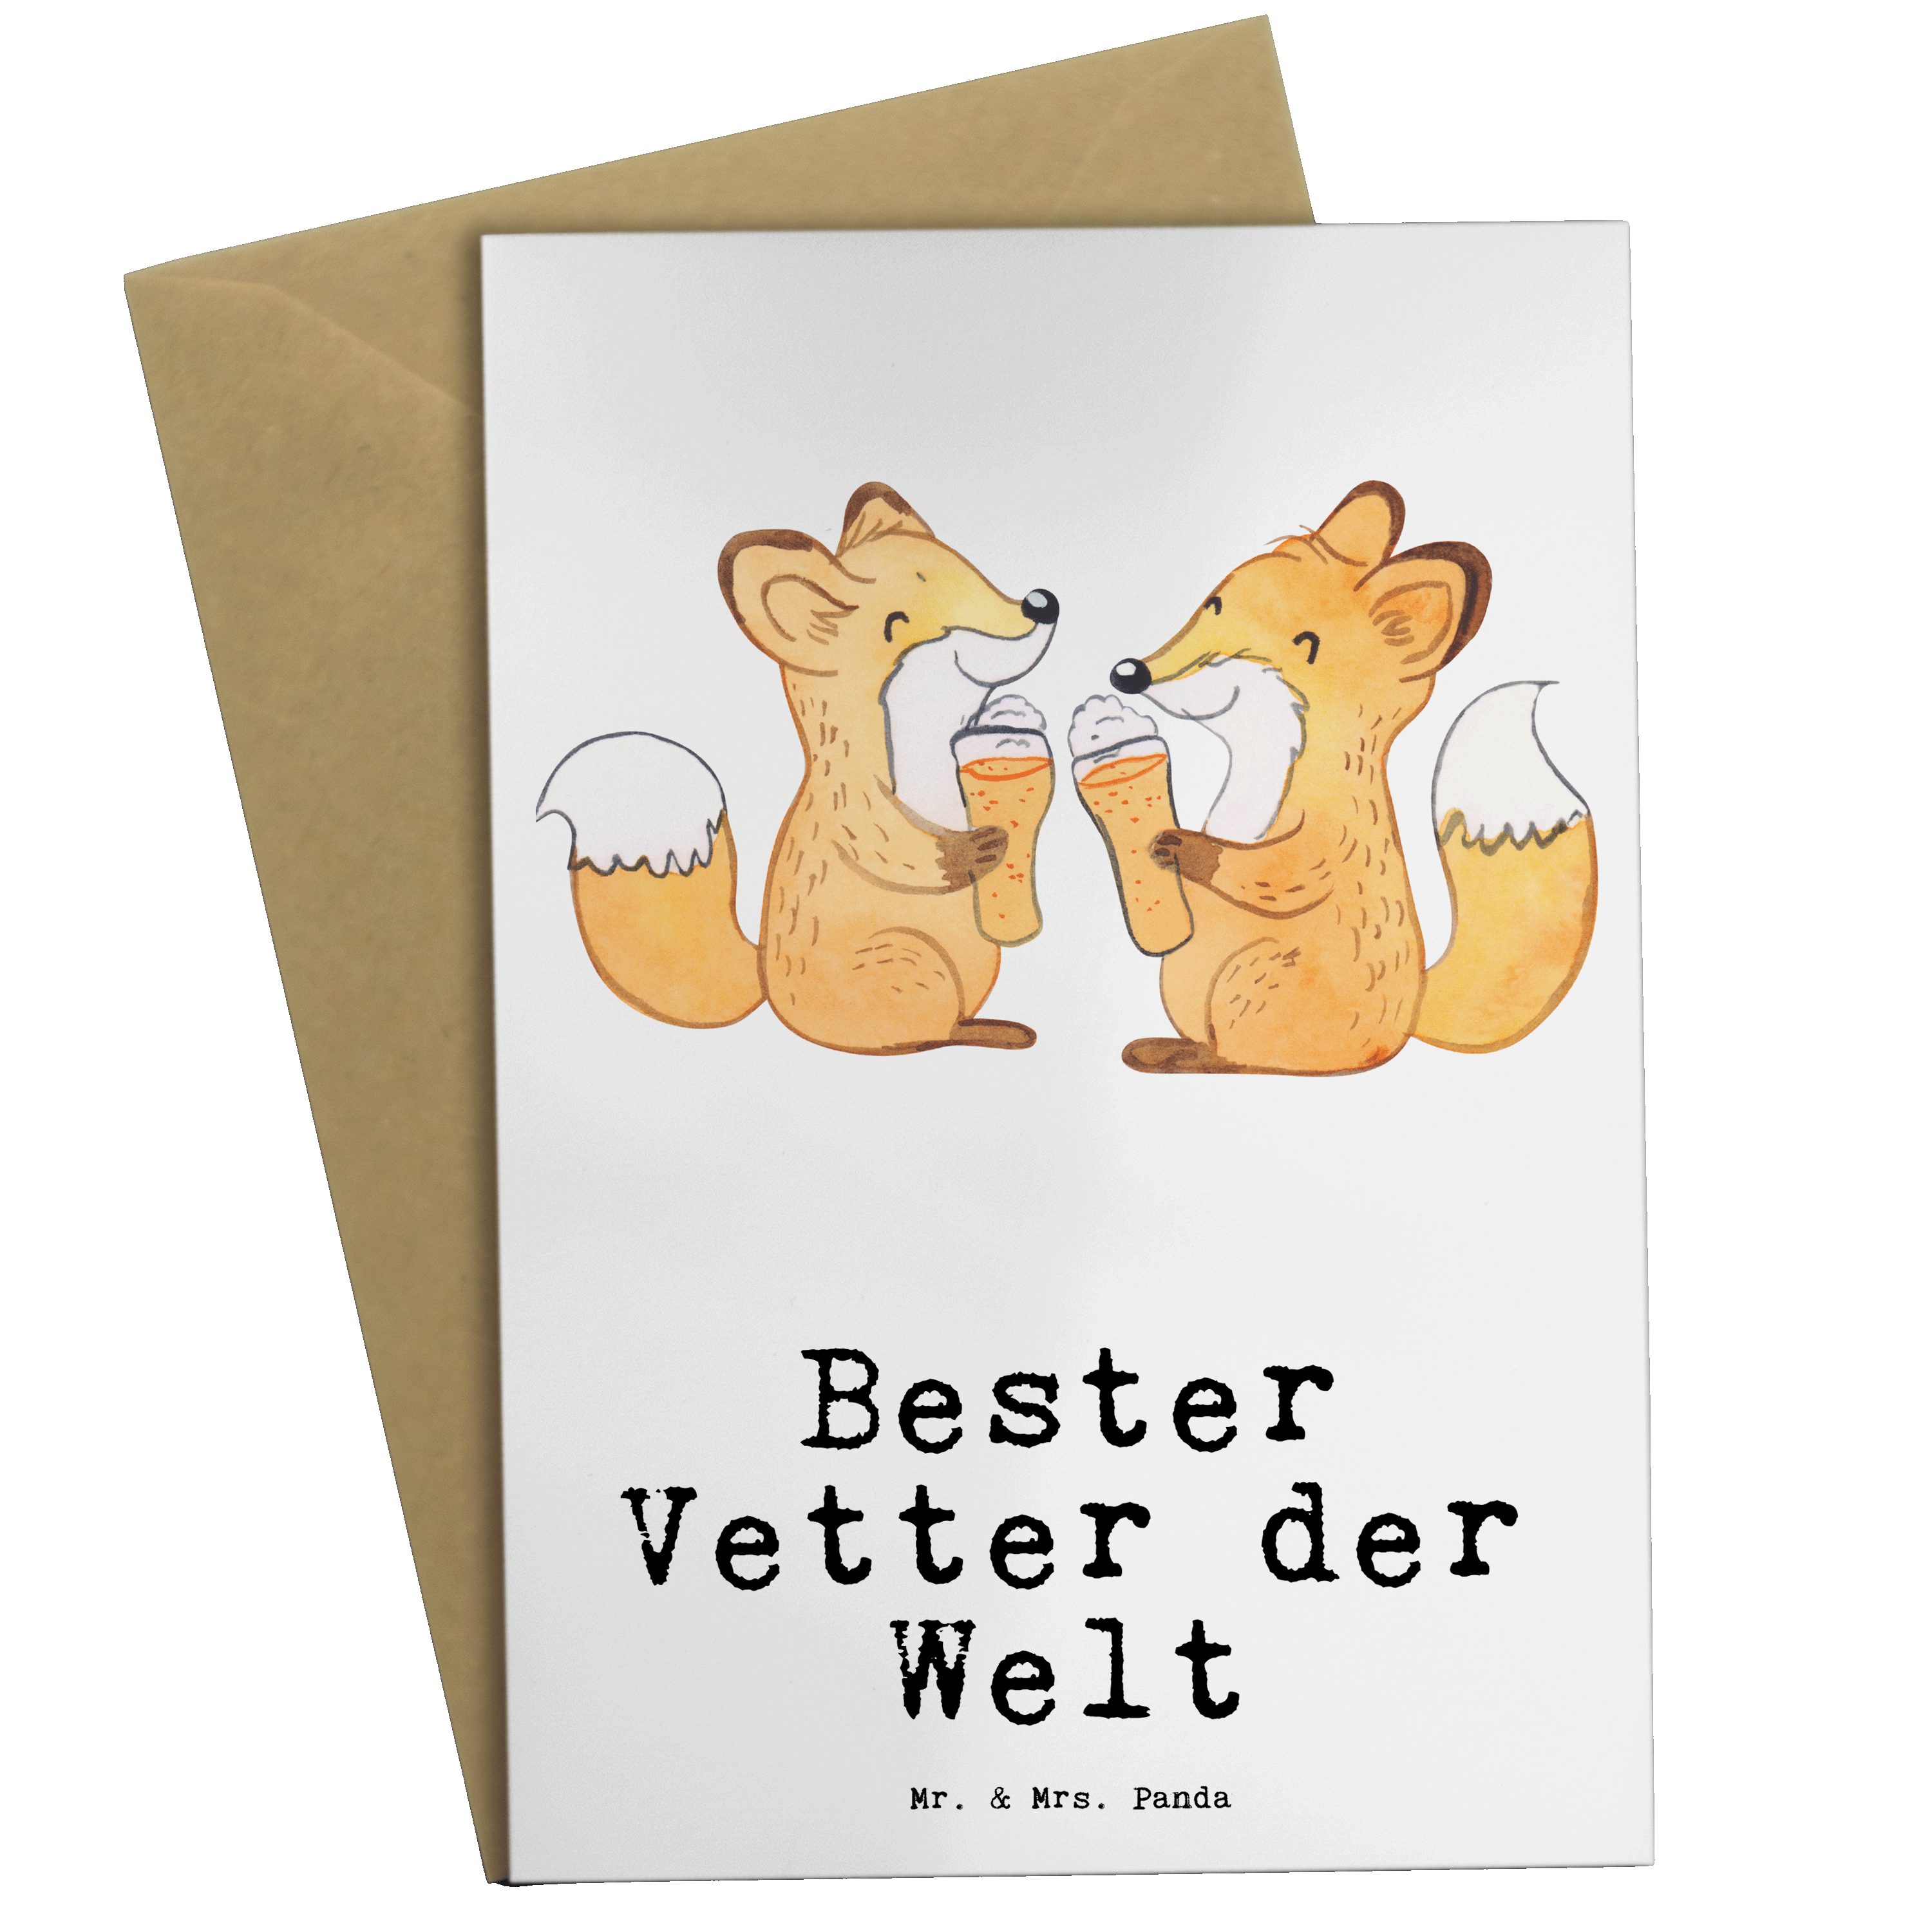 Welt Sohn Schenken, Fuchs Grußkarte - Mr. der von - Bester Vetter & Panda Weiß Geschenk, Mrs. On